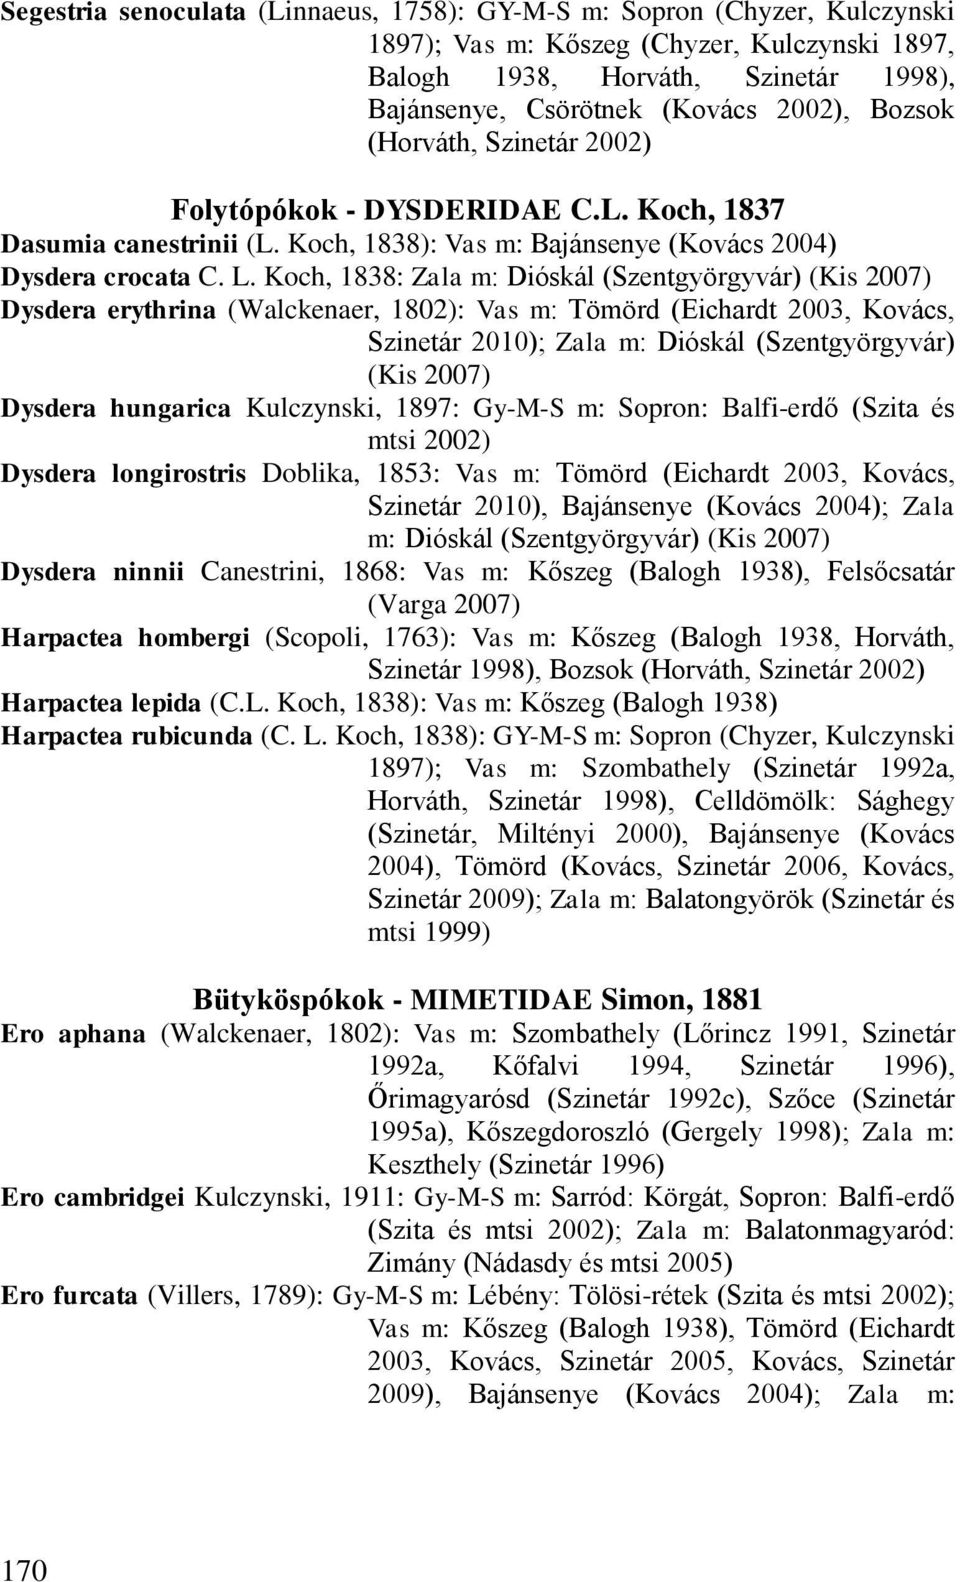 Koch, 1838: Zala m: Dióskál (Szentgyörgyvár) (Kis 2007) Dysdera erythrina (Walckenaer, 1802): Vas m: Tömörd (Eichardt 2003, Kovács, Szinetár 2010); Zala m: Dióskál (Szentgyörgyvár) (Kis 2007) Dysdera